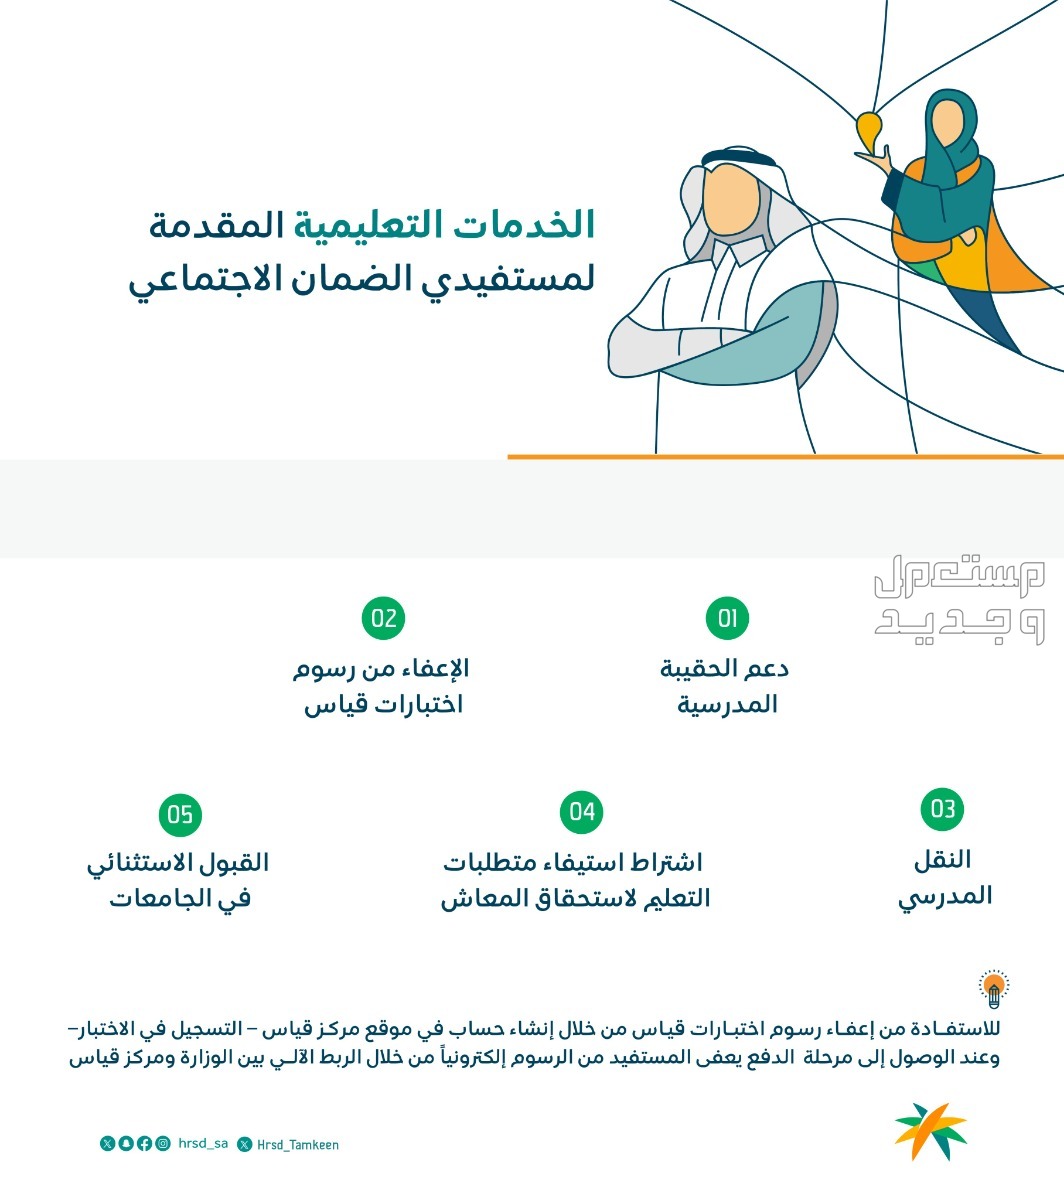 5 خدمات تعليمية لمستفيدي الضمان الاجتماعي في اليوم العالمي للتعليم في البحرين خدمات تعليمية لمستفيدي الضمان الاجتماعي